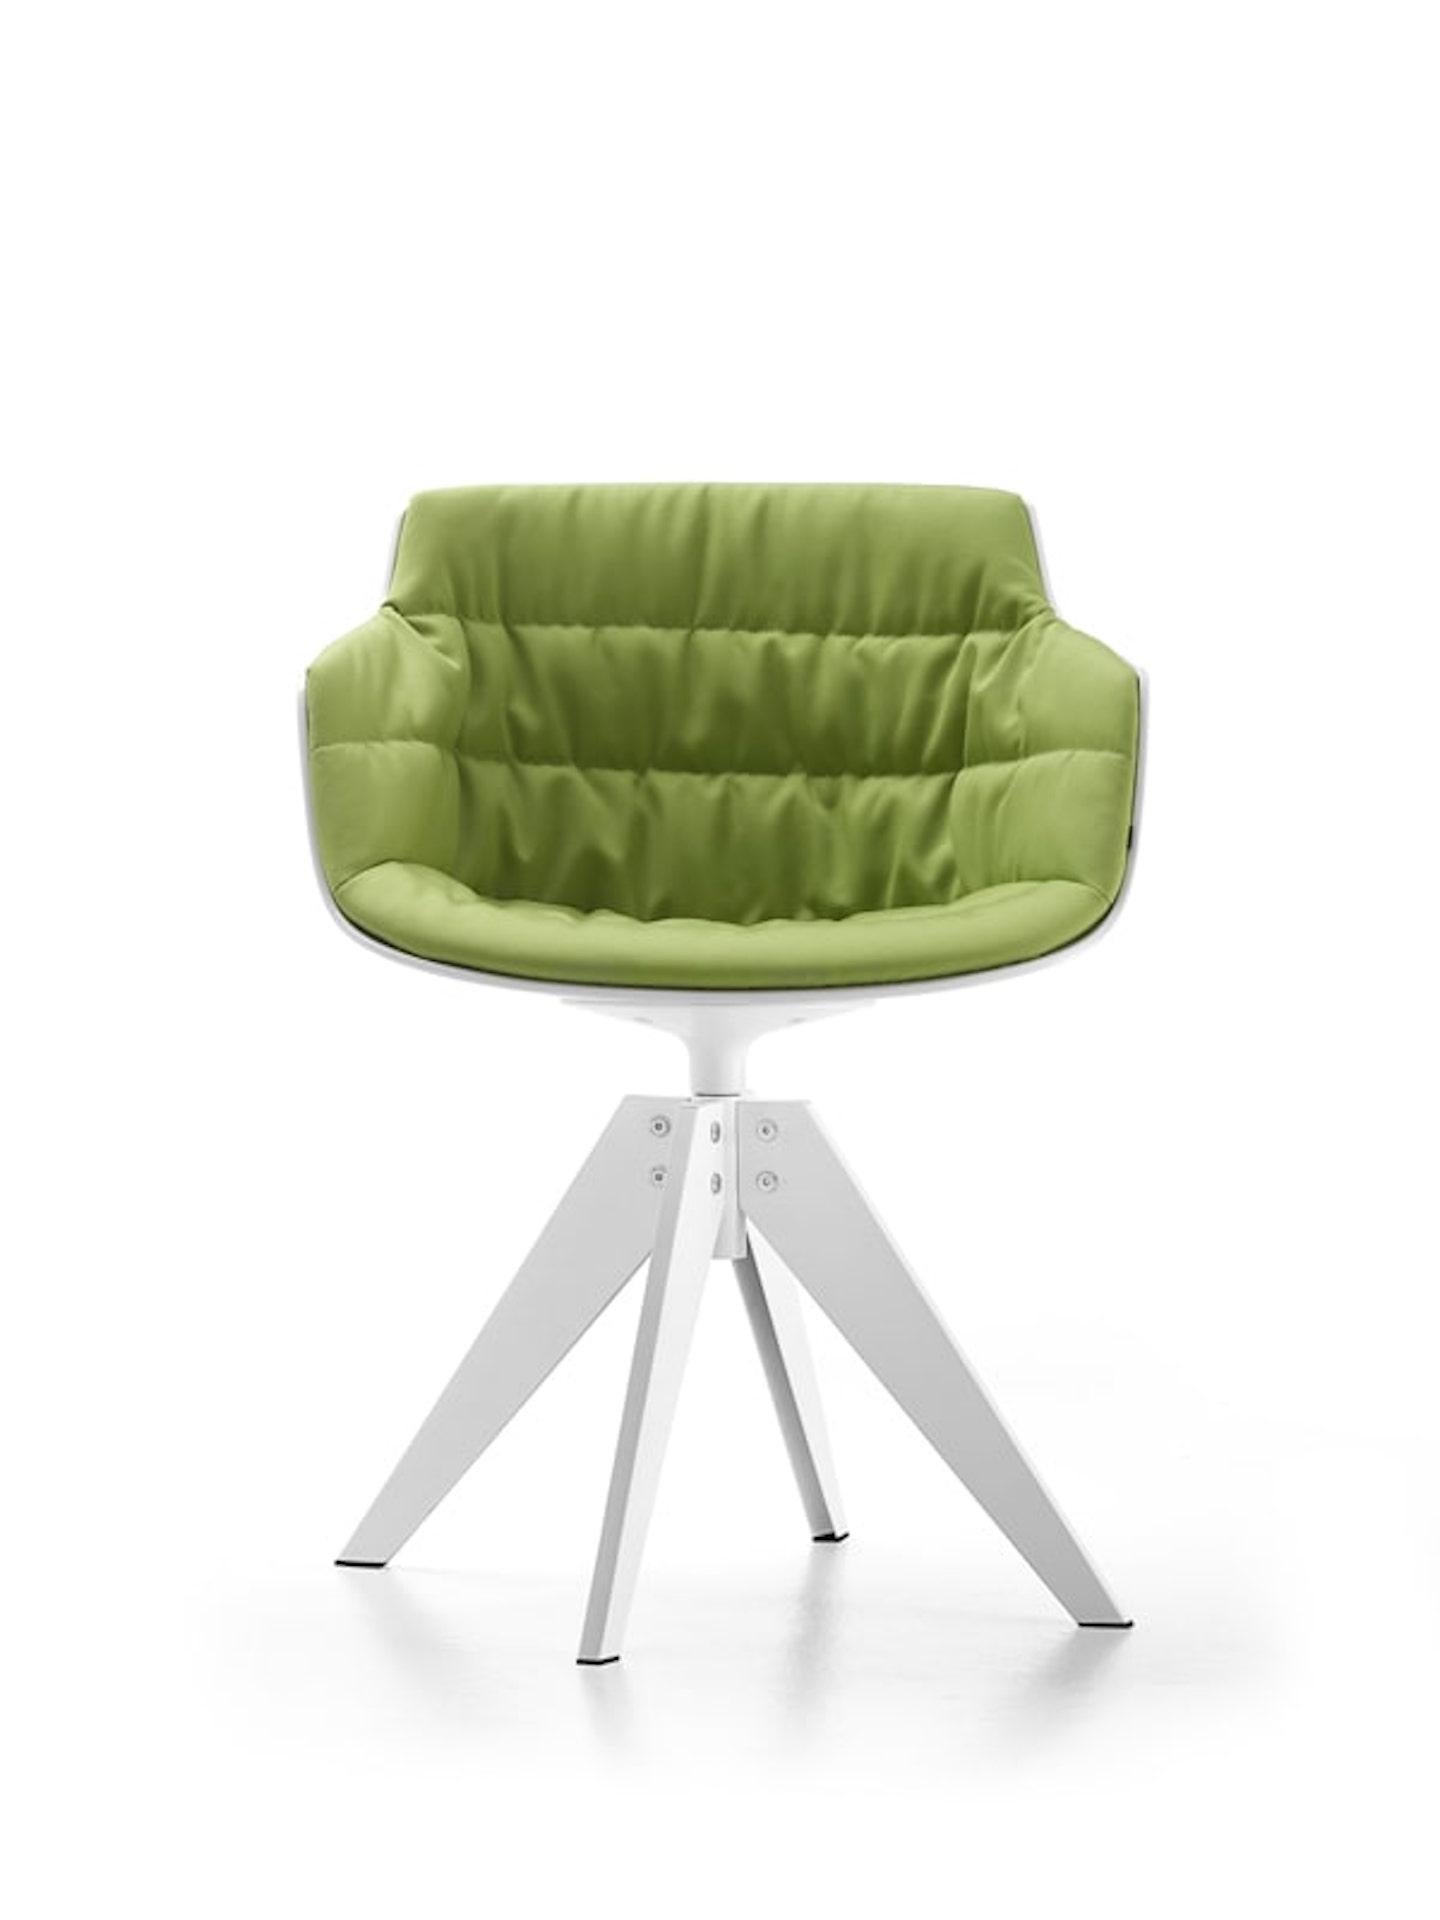 prix indiqué pour la base en acier et le tissu de départ.
Flow Slim, une chaise conçue pour la première fois en 2014 comme une évolution naturelle de la famille Flow, réunit confort et esthétique.

Un fauteuil sinueux au style contemporain qui